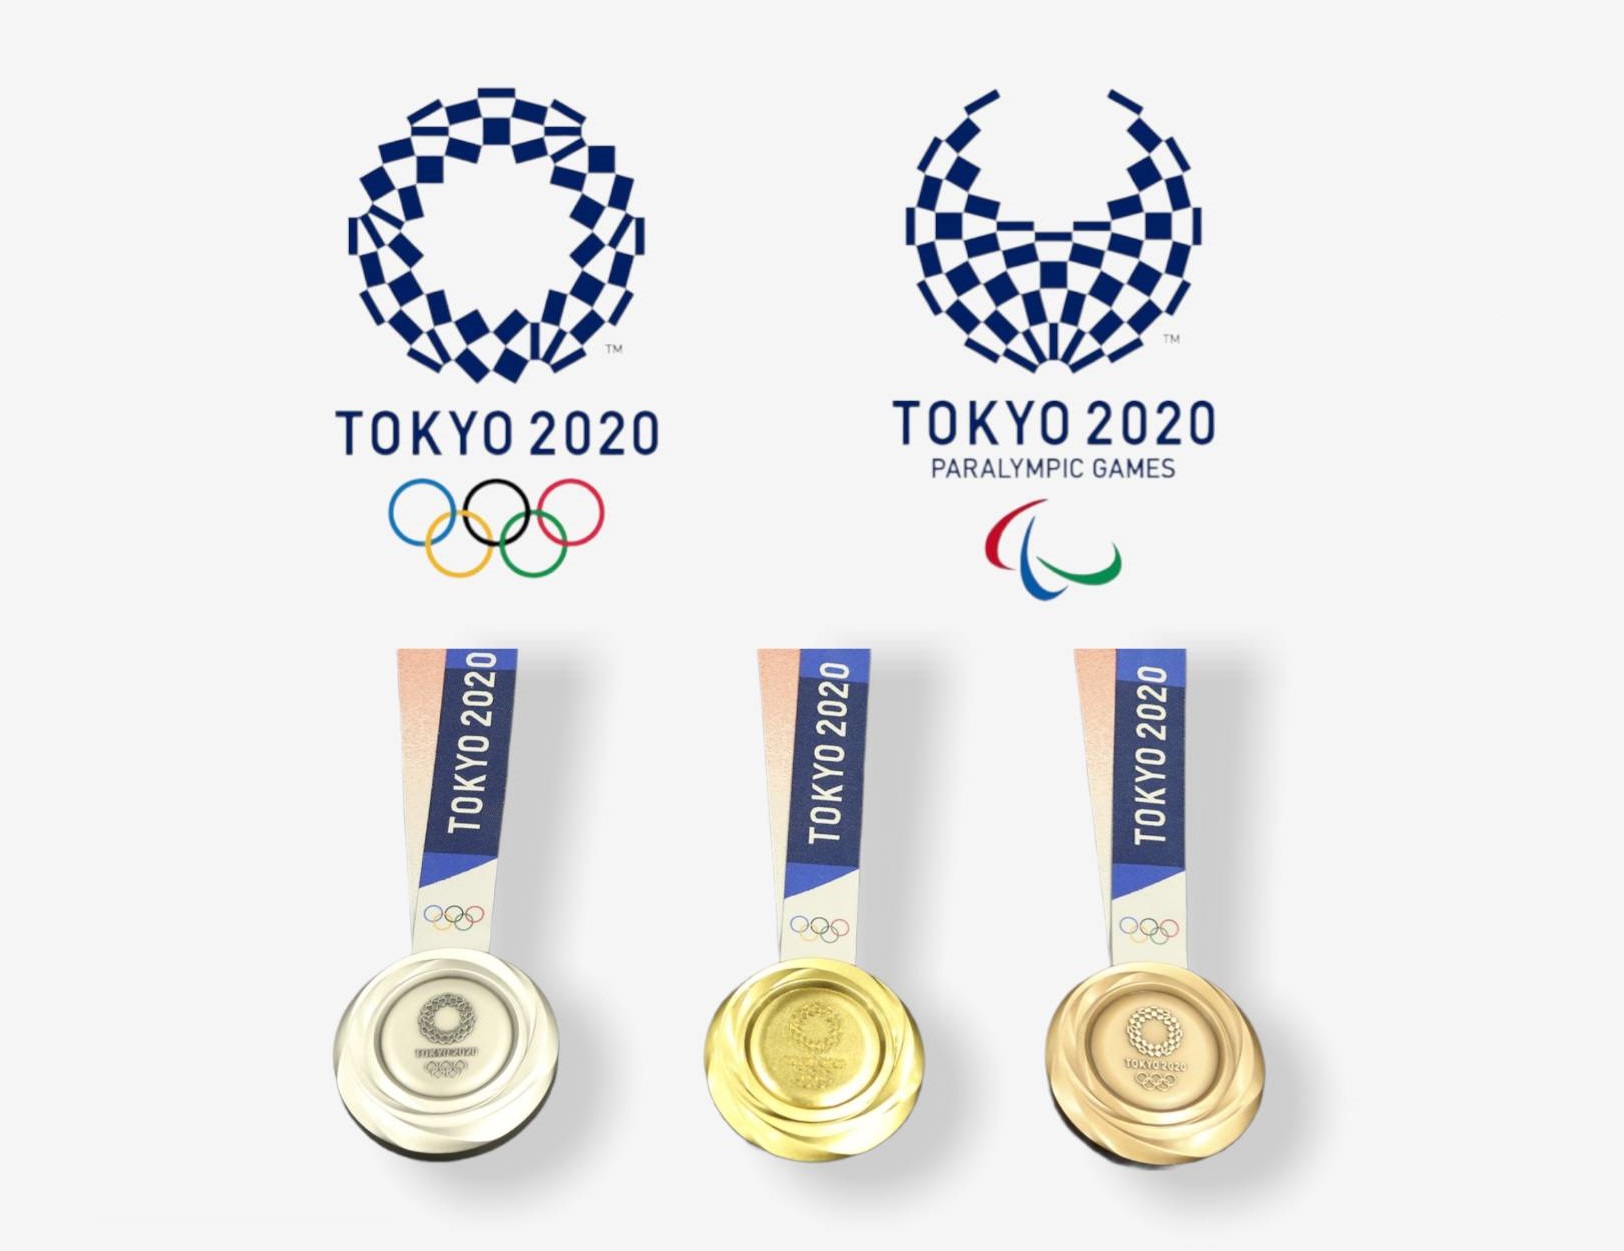 โอลิมปิก Tokyo 2020 จัดการแข่งขันบนหลัก SDGs มุ่งสู่ความยั่งยืน – สังคม